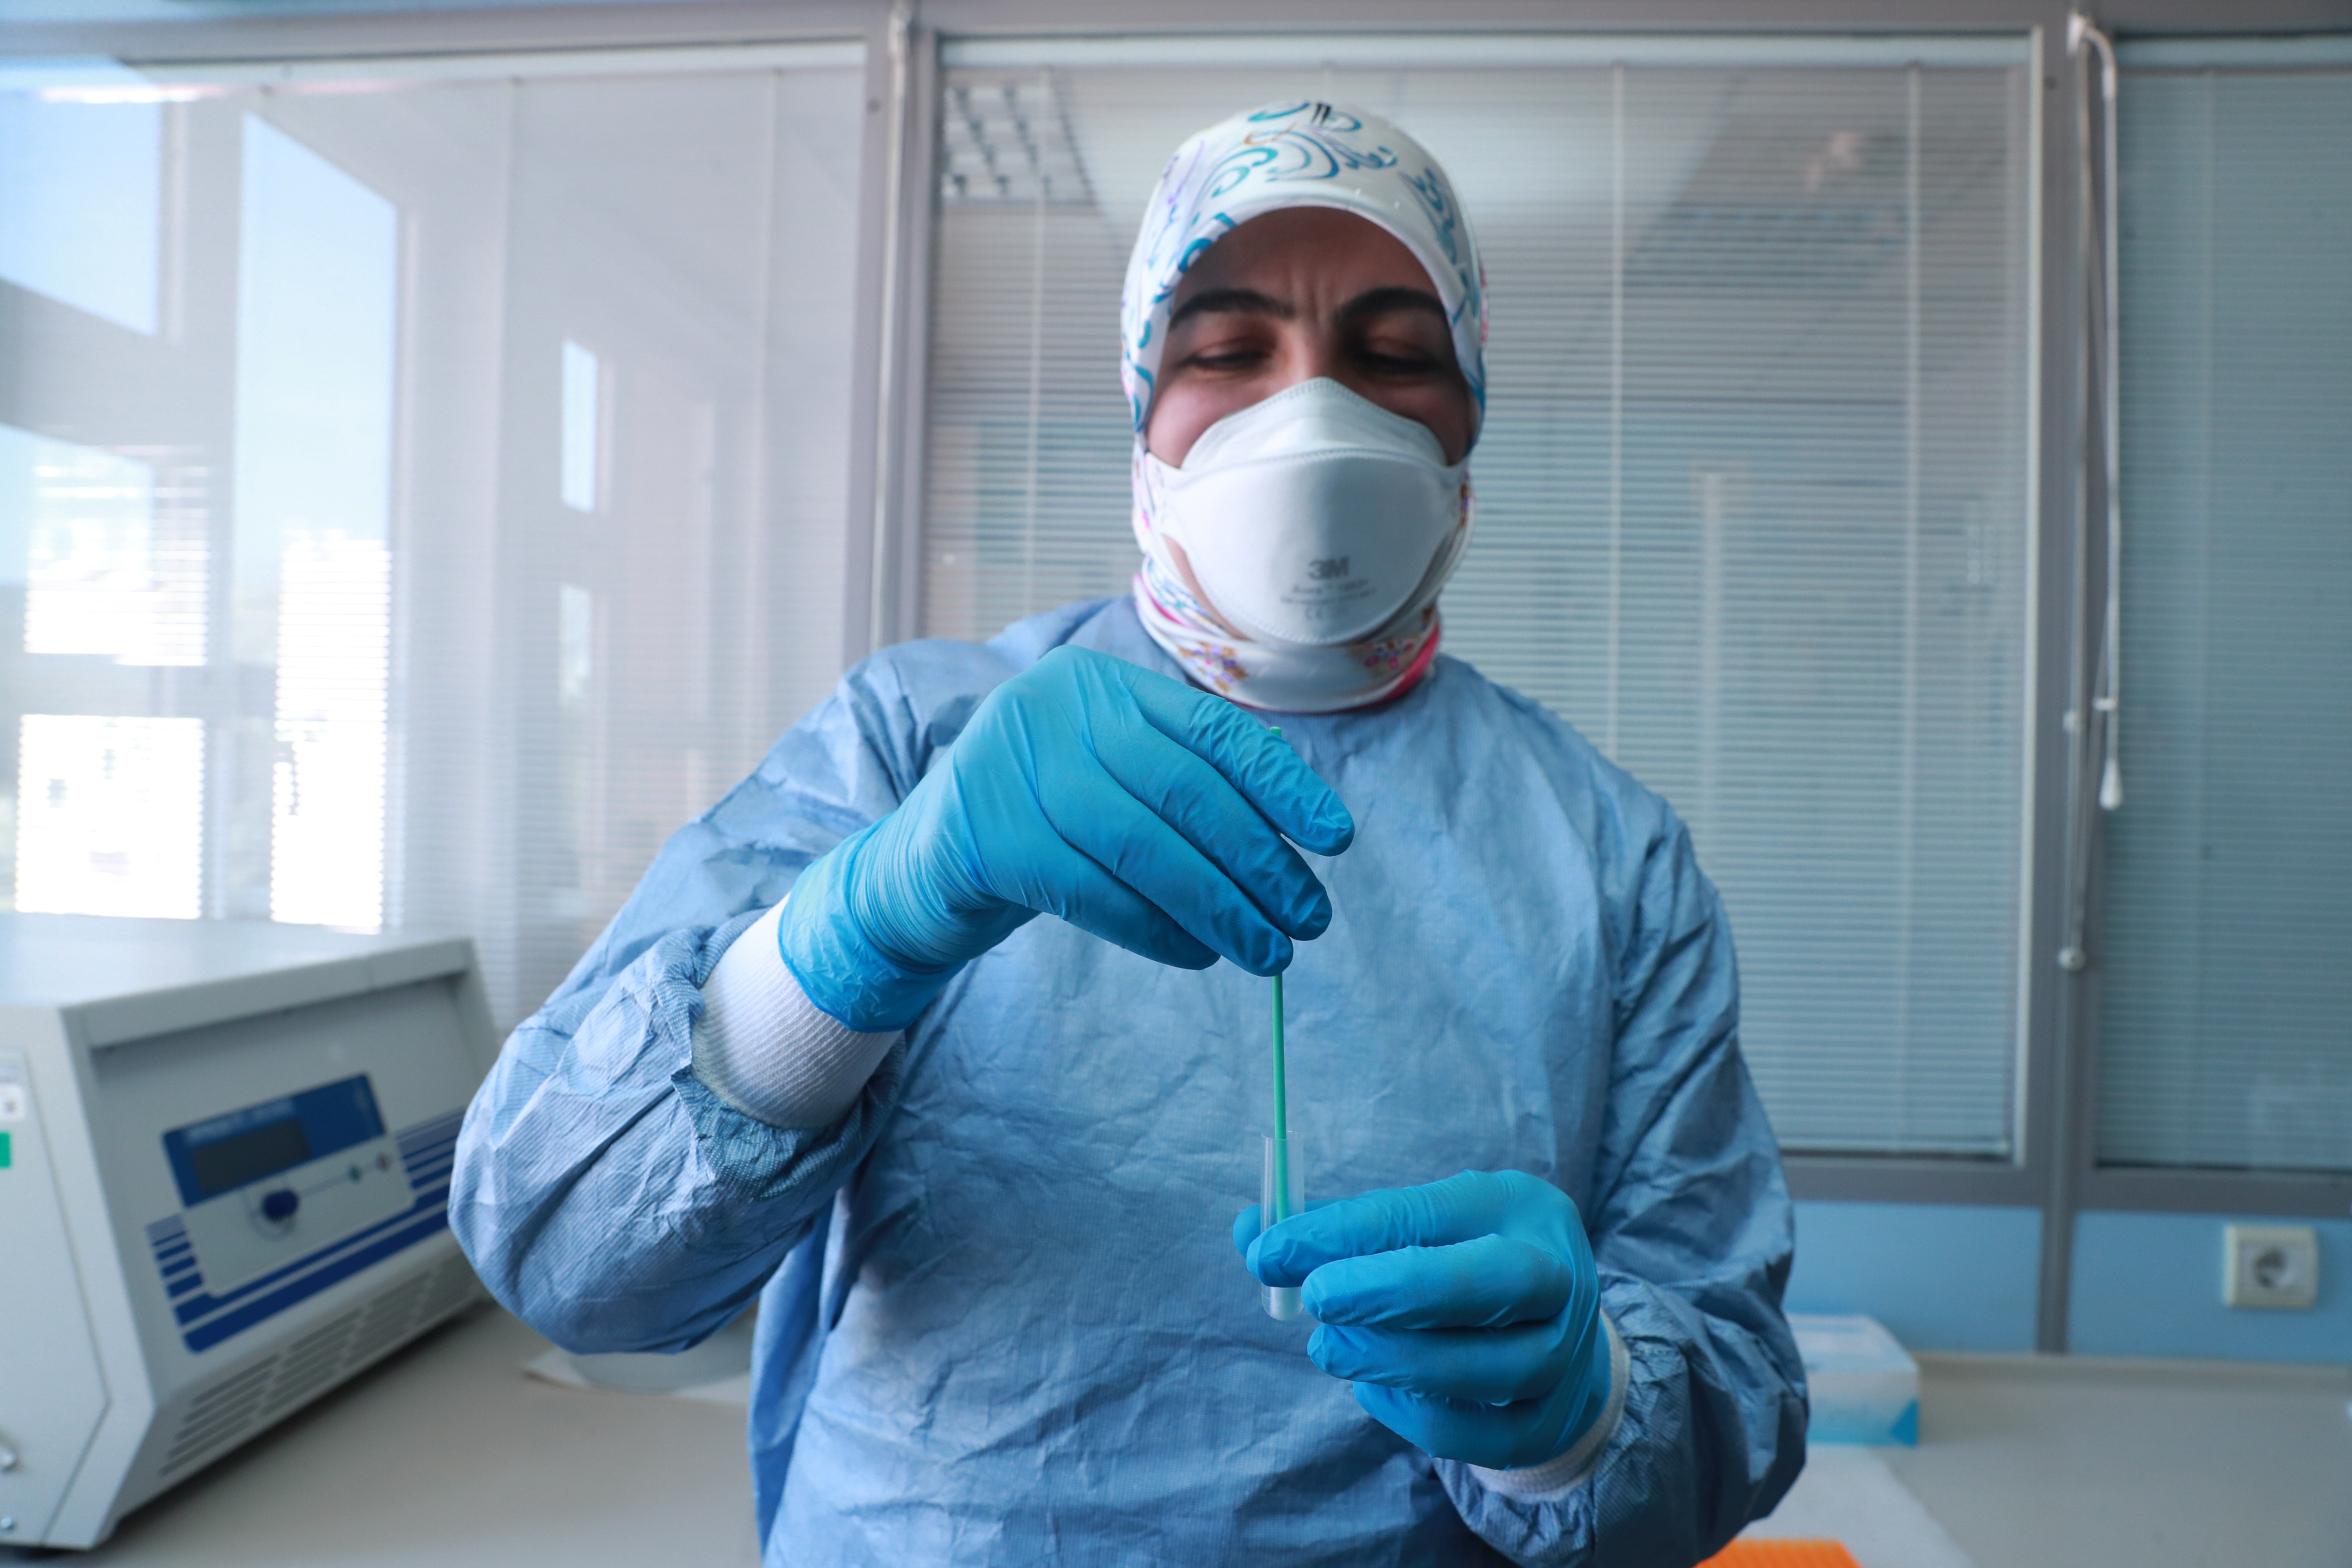 Turquía intenta mejorar su imagen internacional con material médico contra el coronavirus